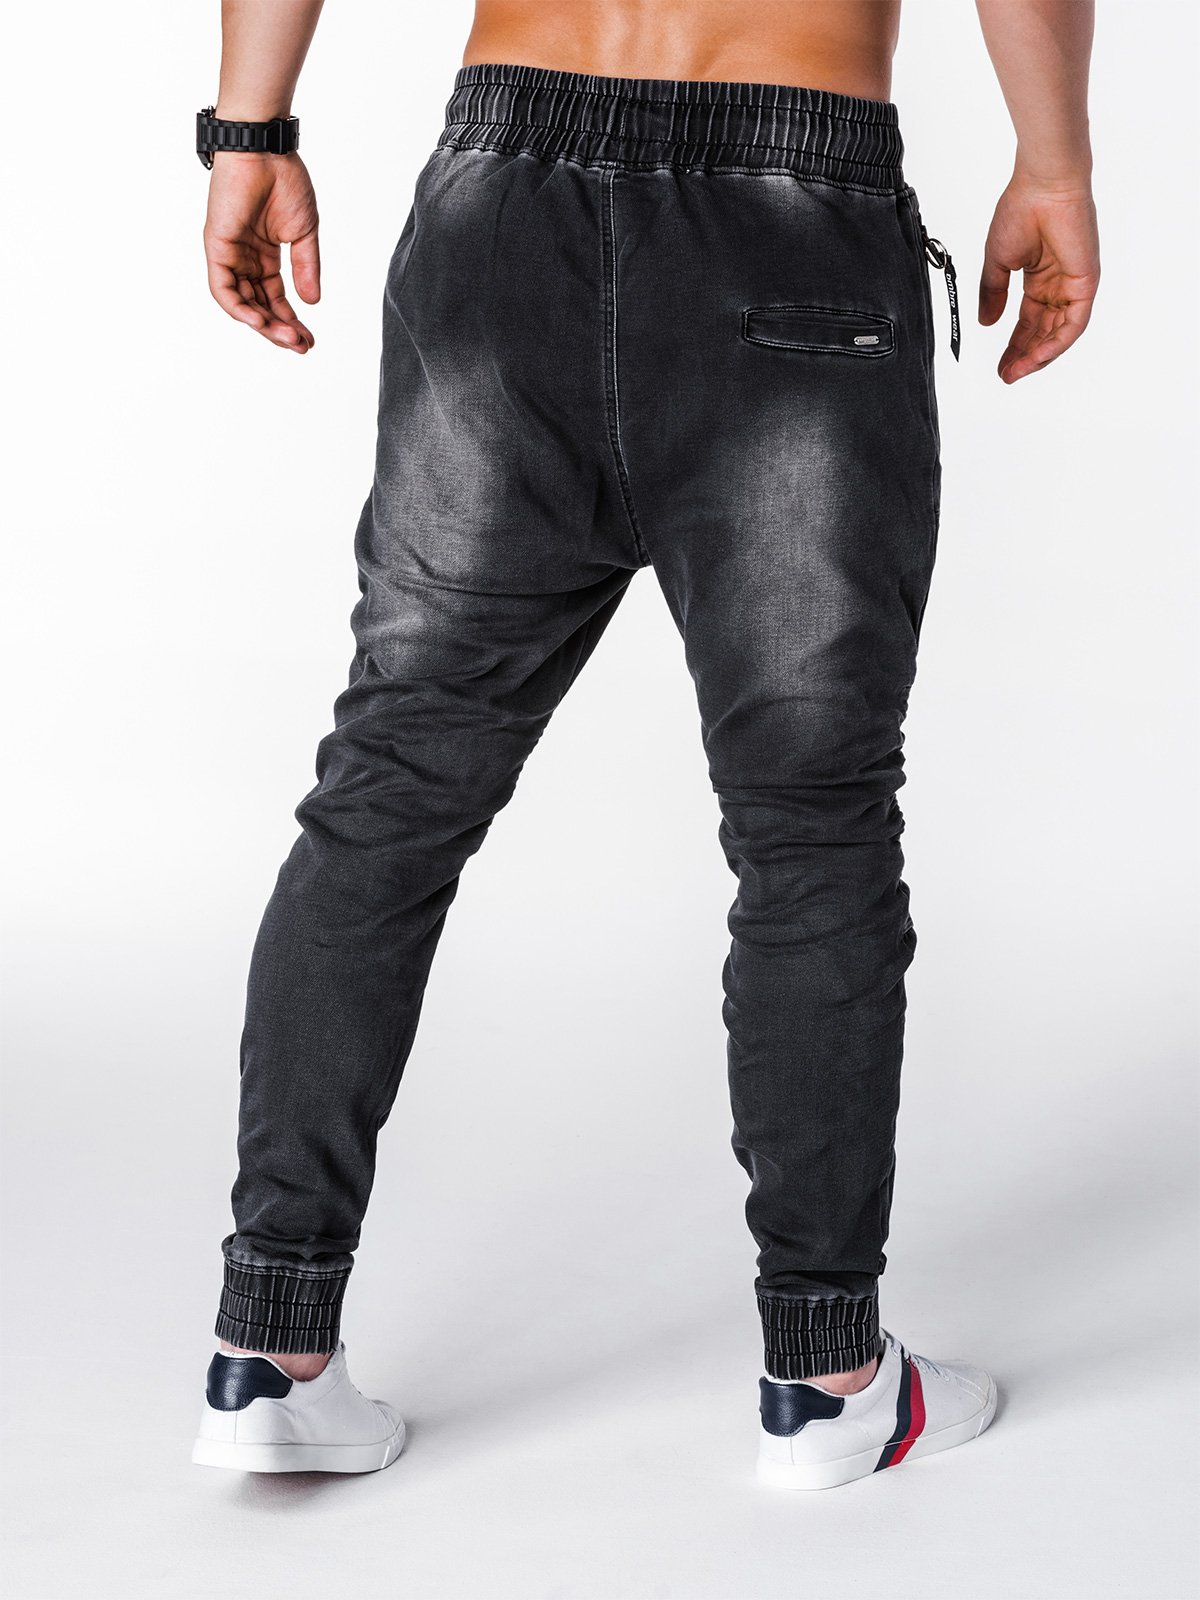 Men's jeans joggers P649 - black | MODONE wholesale - Clothing For Men